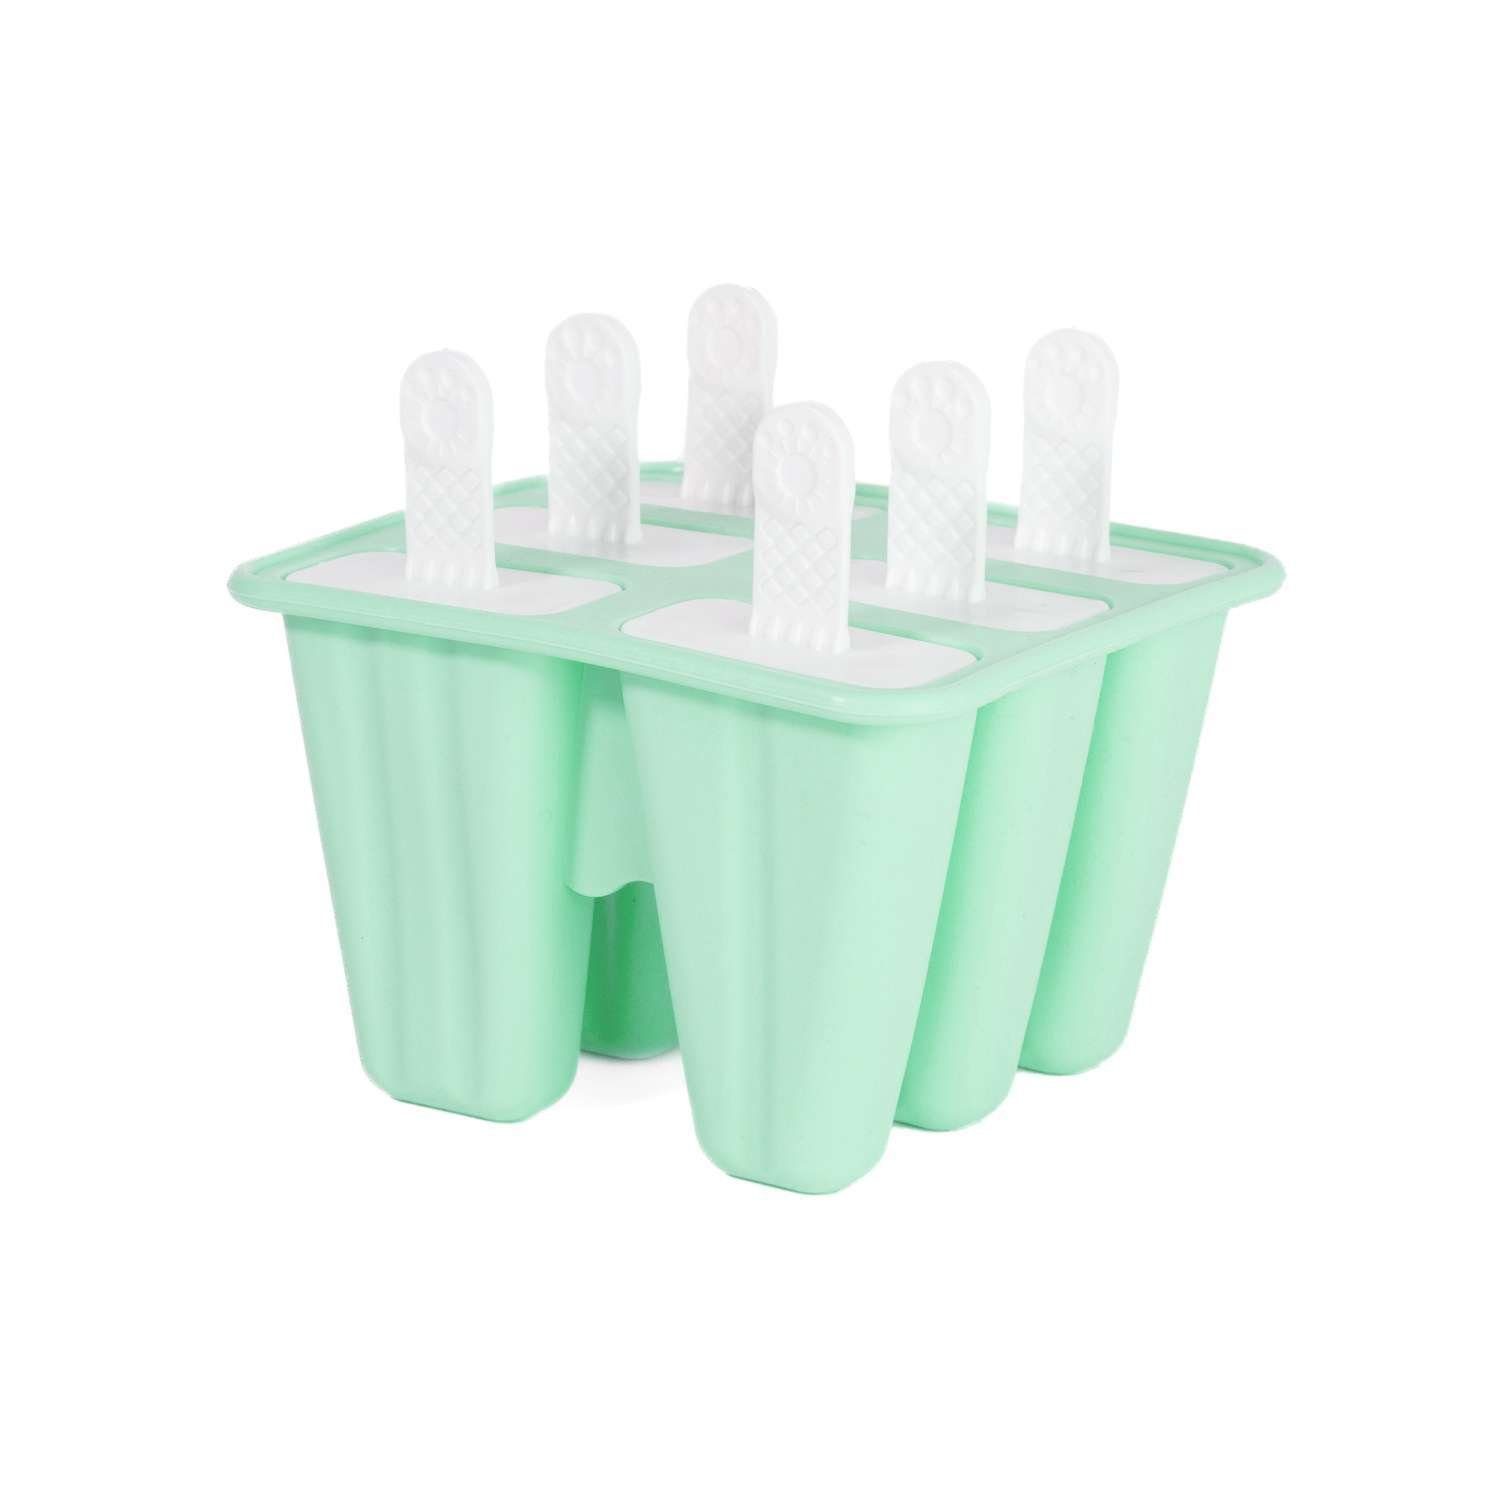 Intirilife Eisform, Silikon Eisform mit 6 Mulden und Stil Grün